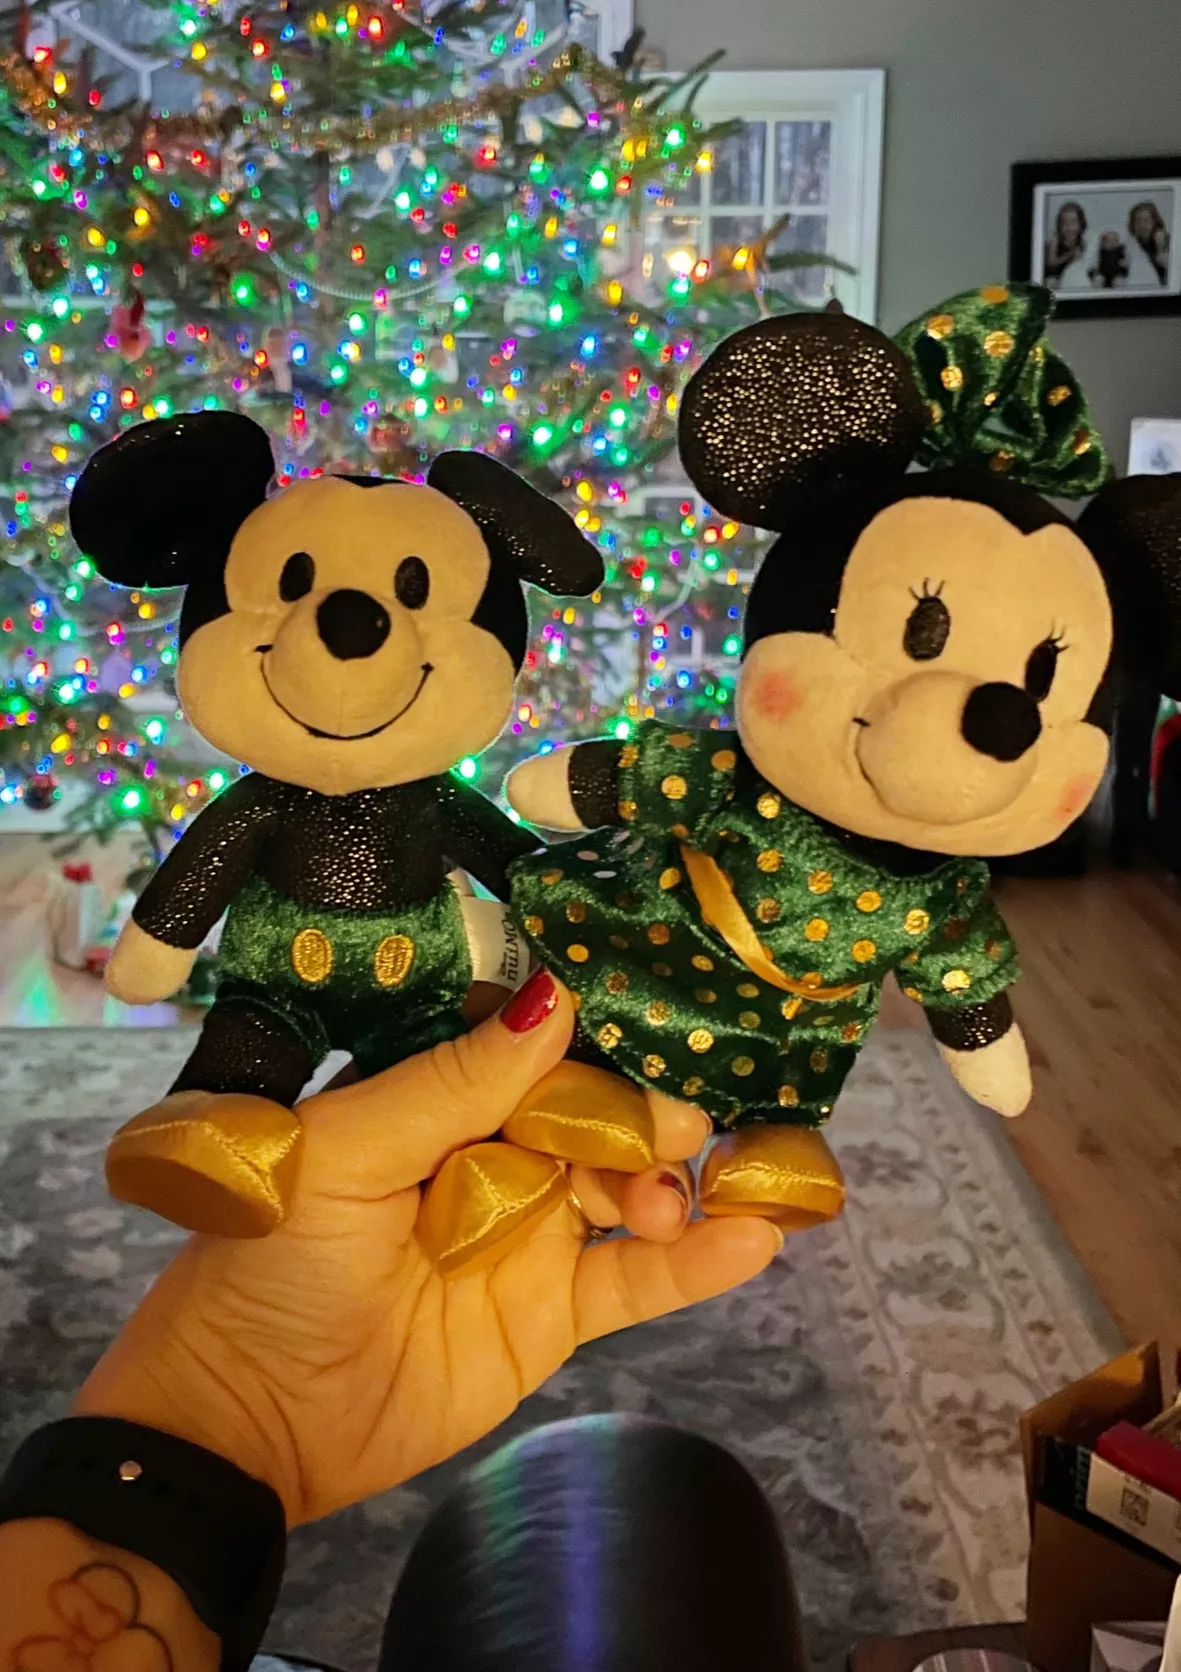 Mickey Mouse Disney nuiMOs Plush